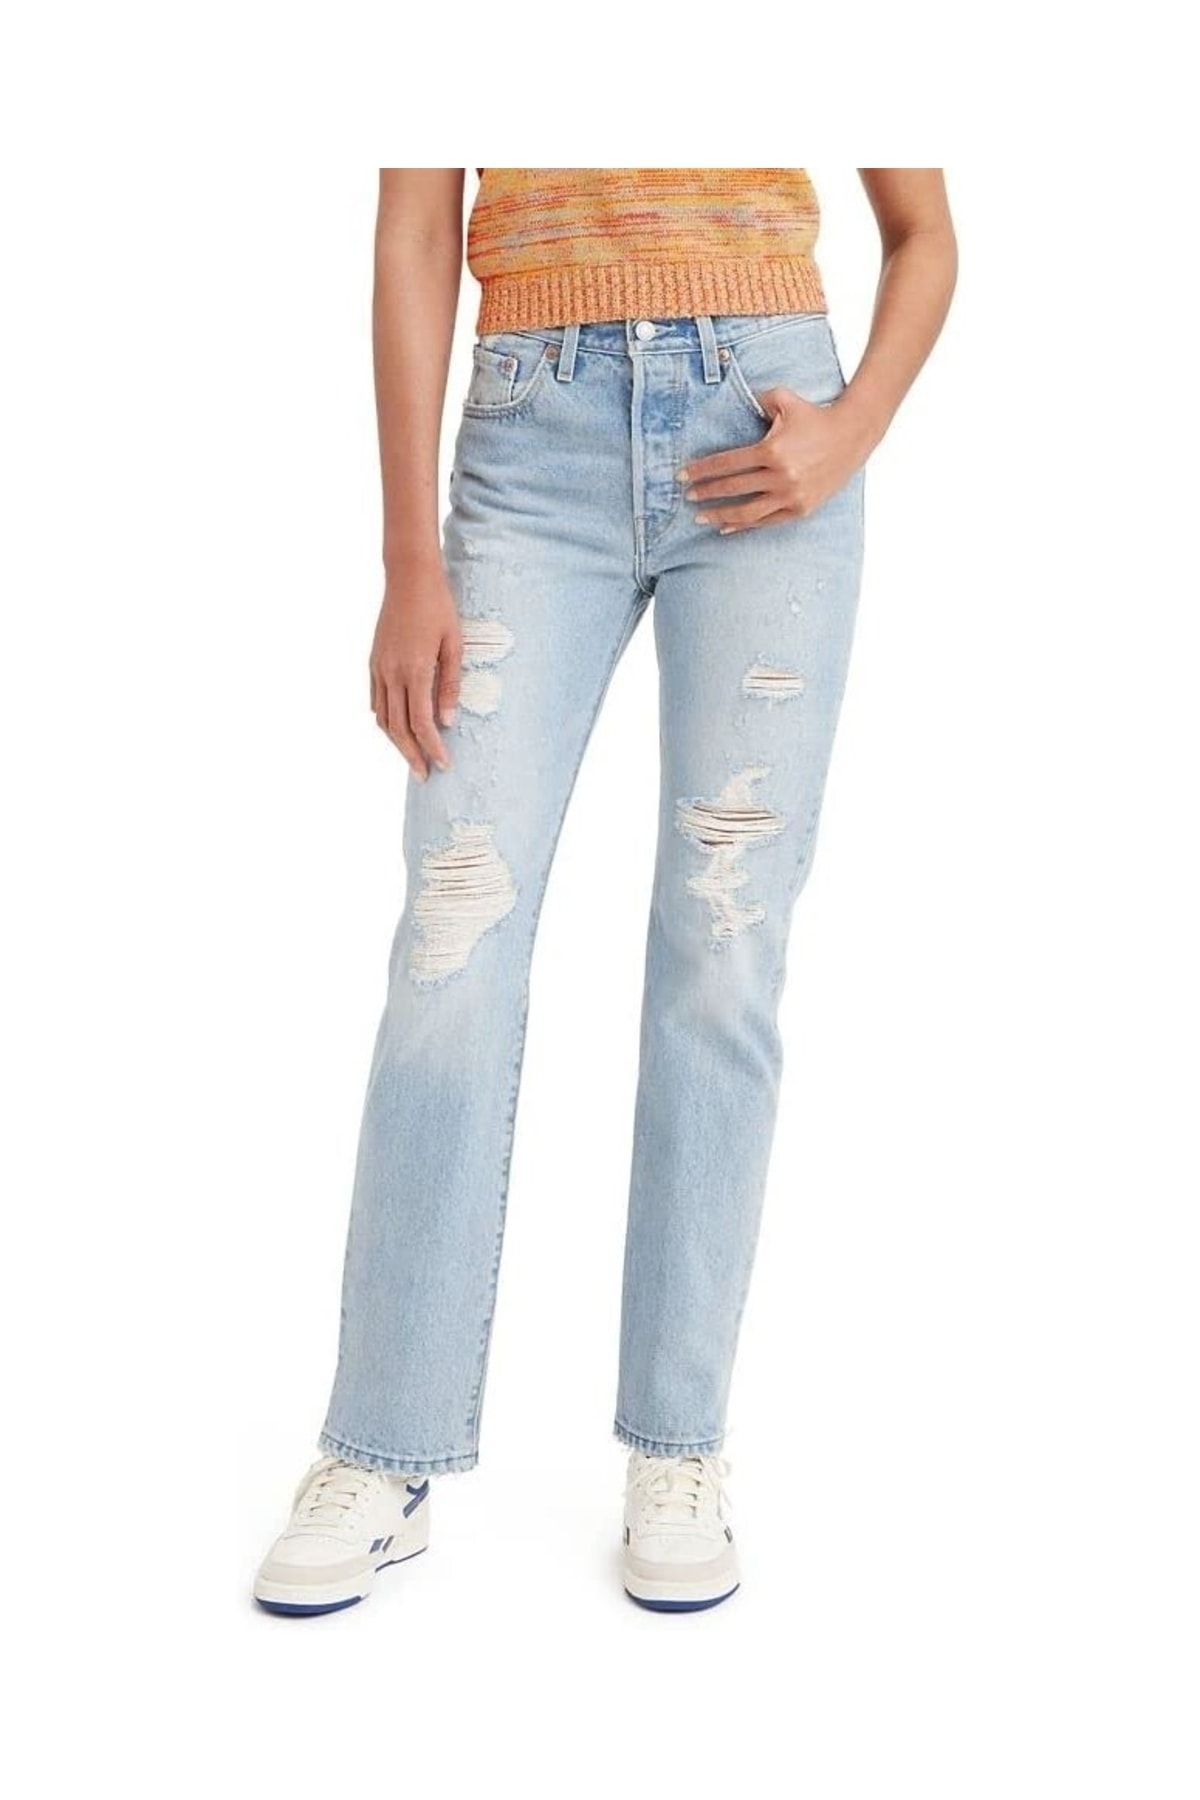 Levi's 501® Jeans For Women Z0627 Lıght Indıgo